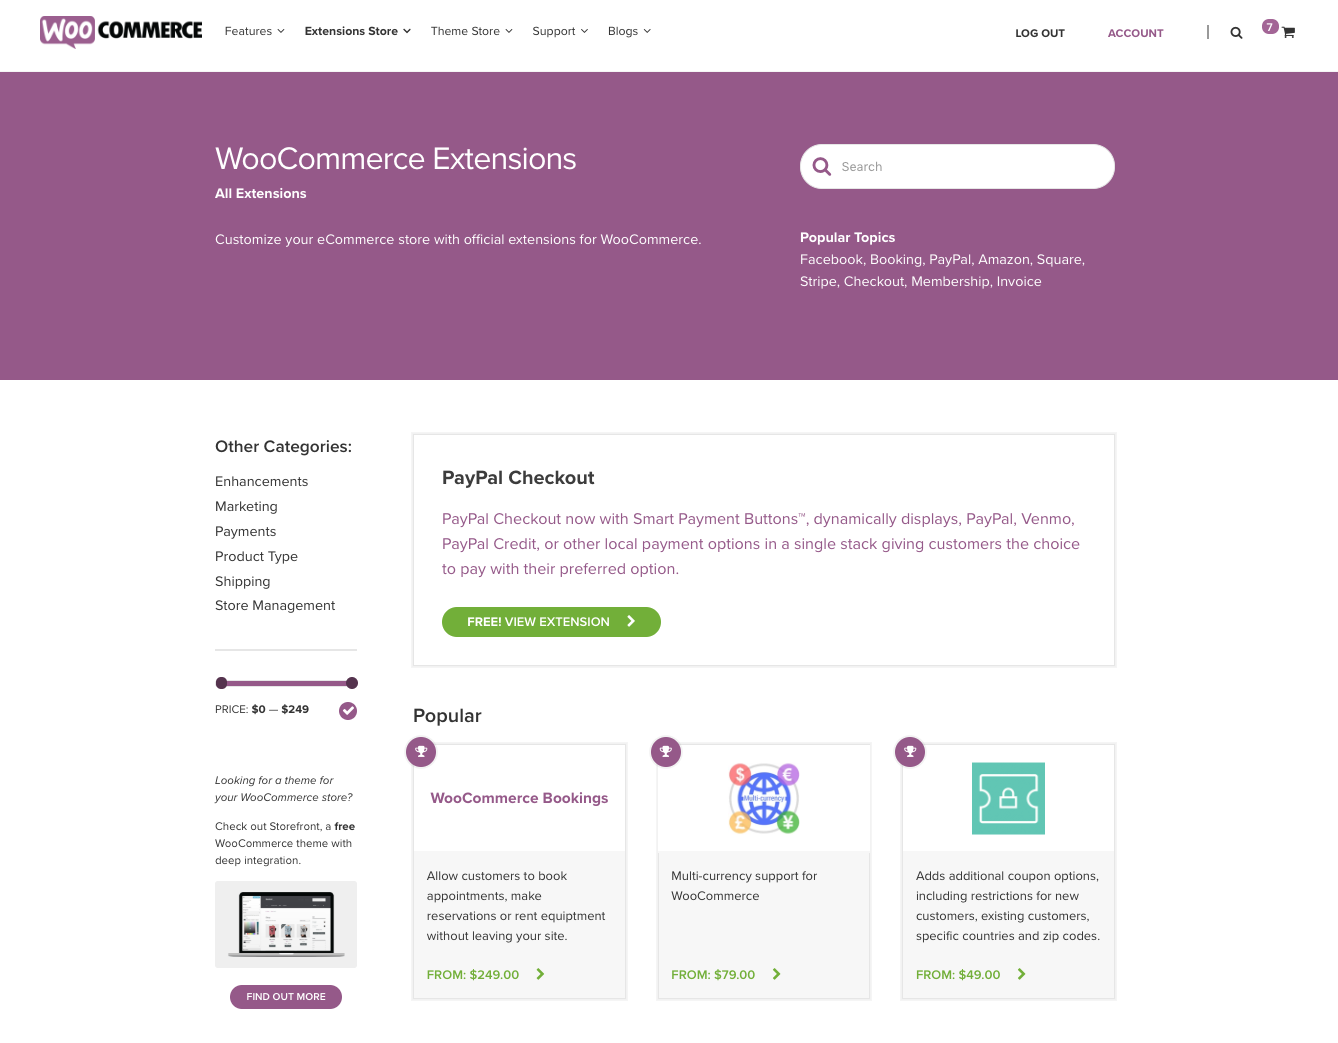 WooCommerce-Erweiterungsbibliothek, die unbegrenzte Funktionalität bietet